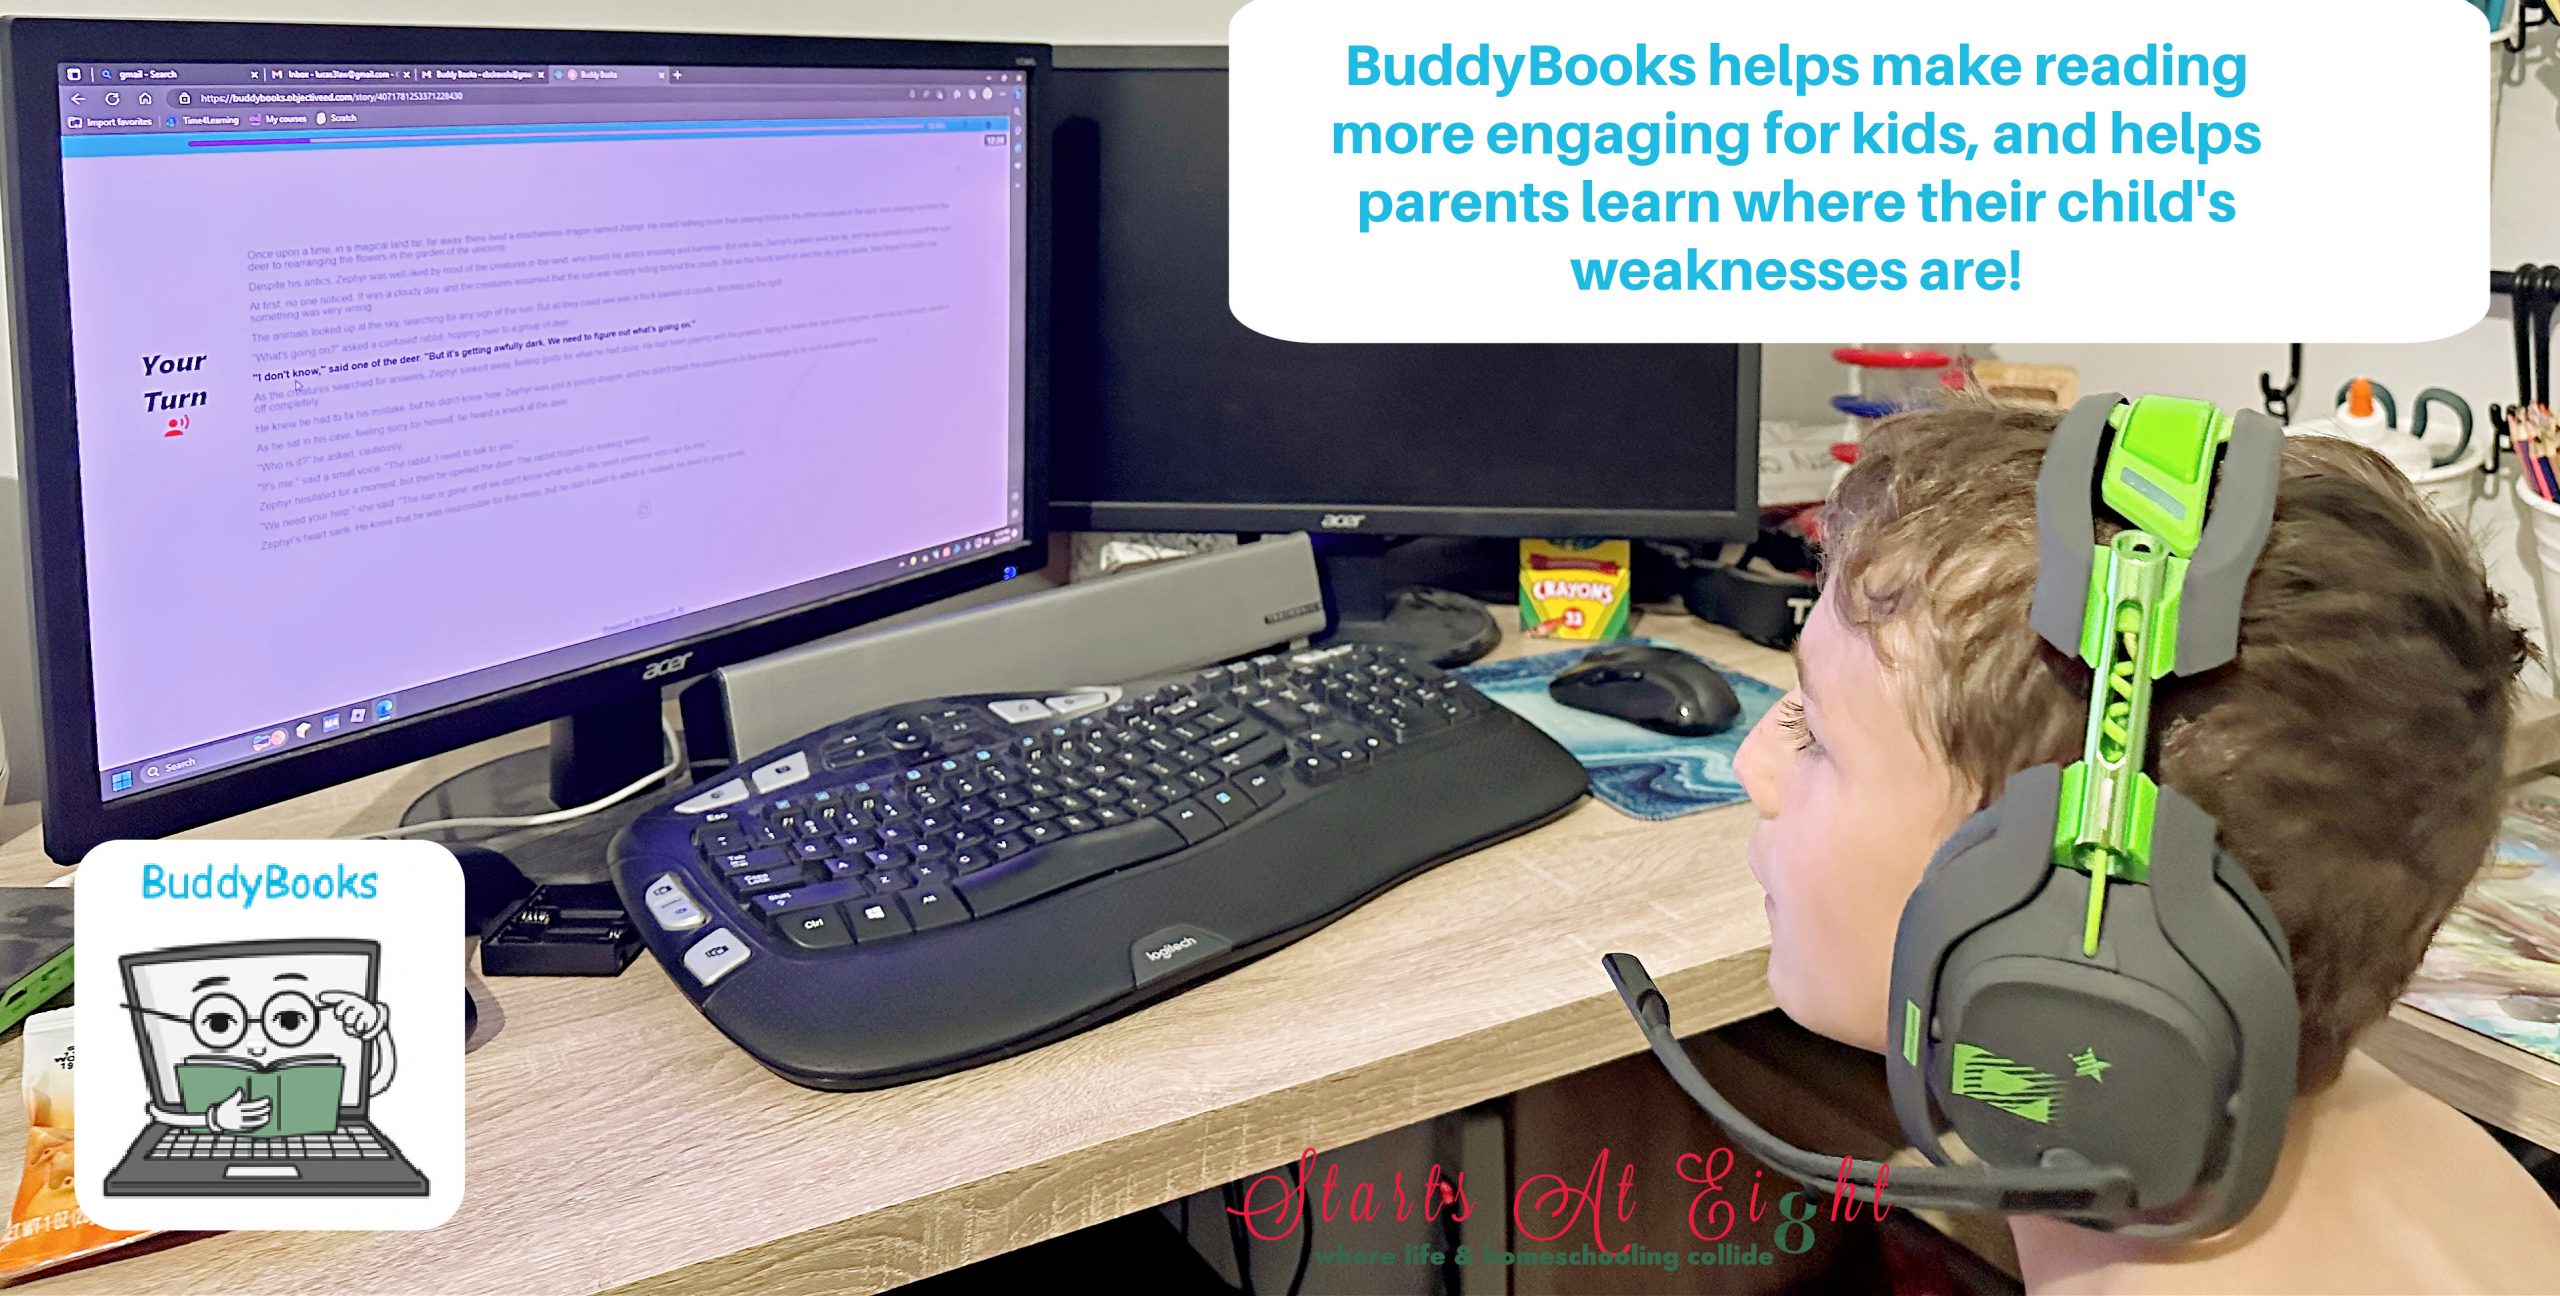 BuddyBooks encourages independent reading